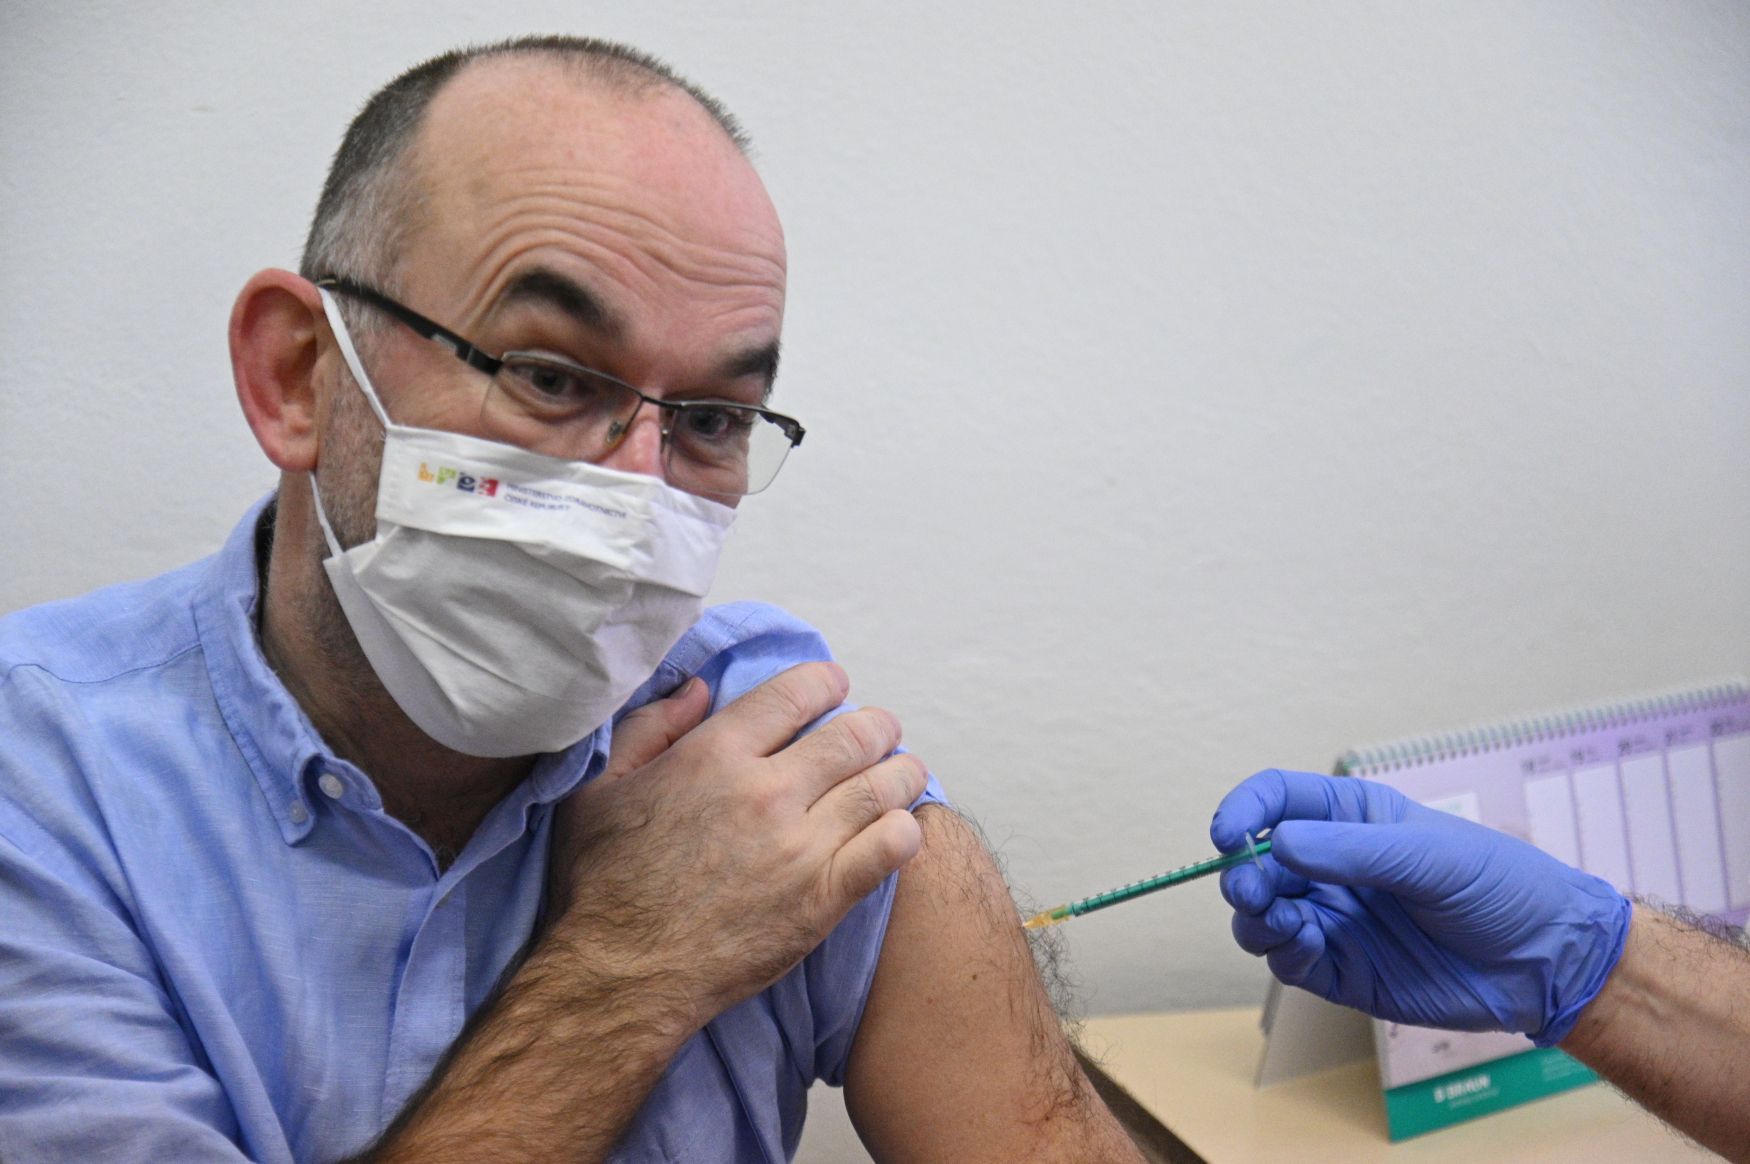 Blatný-druhé kolo očkování proti nemoci covid-19